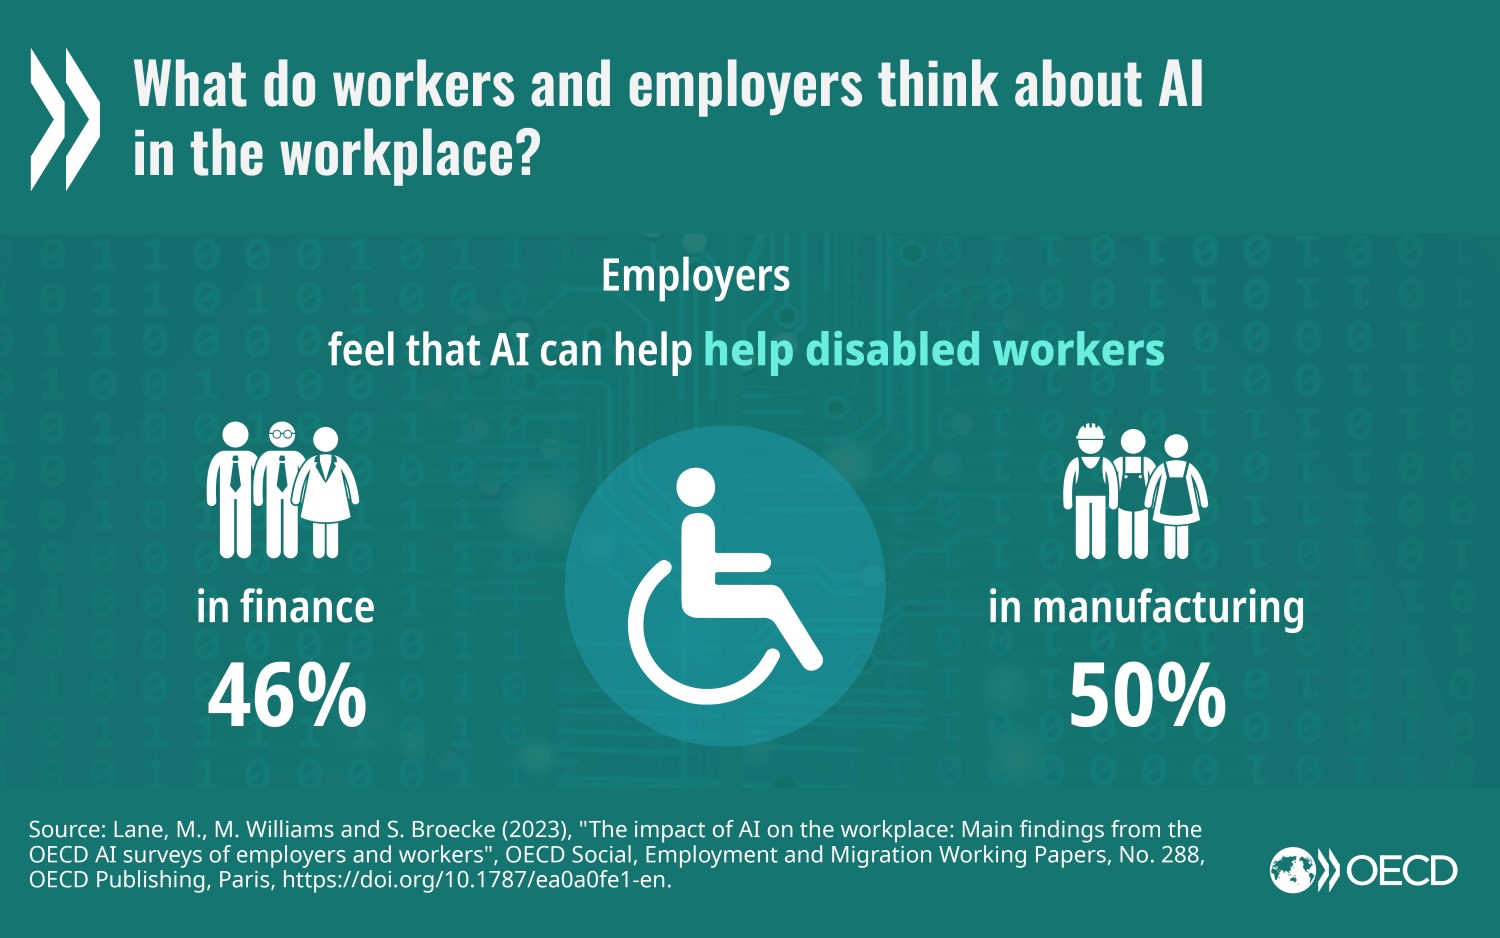 Az MI hatása a fogyatékossággal élőkre: A munkaadók 50%-a úgy gondolja, hogy a fogyatékossággal élőket segíteni fogja a mesterséges intelligencia a feldolgozóipar területén, a pénzügyi területen ugyanakkor csak 46%-uk látja ugyanezt.